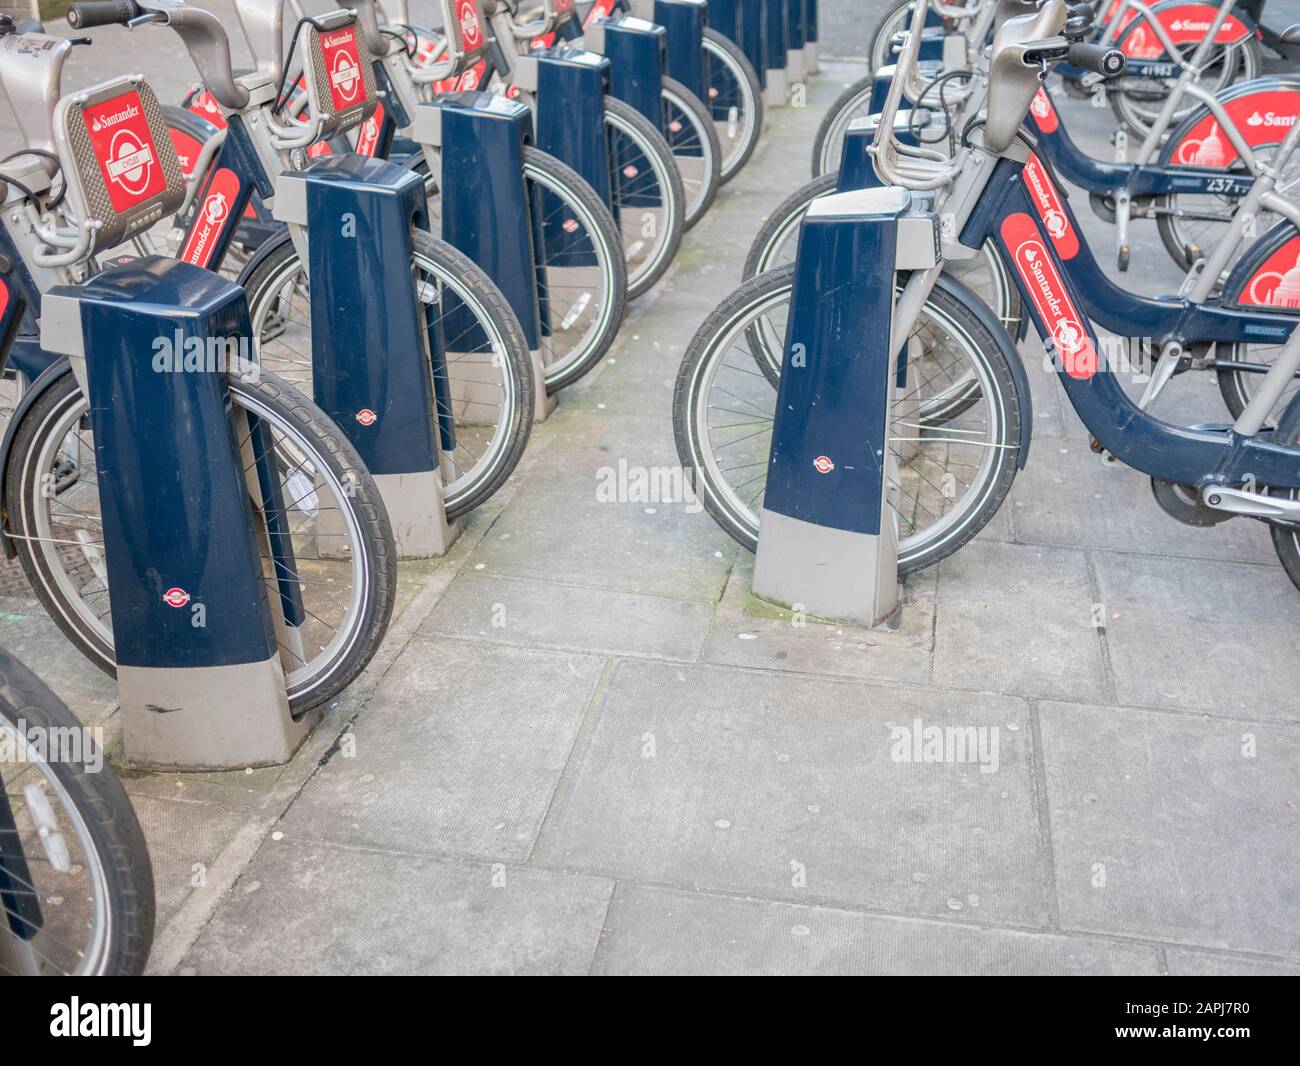 Fahrradständer/-Gestell in der Nähe der U-Bahn-Station Bond Street, London. Für die Erkundung von London, für die Arbeit, für die Arbeit in London, für umweltfreundliches Pendeln, für Fahrradständer. Stockfoto